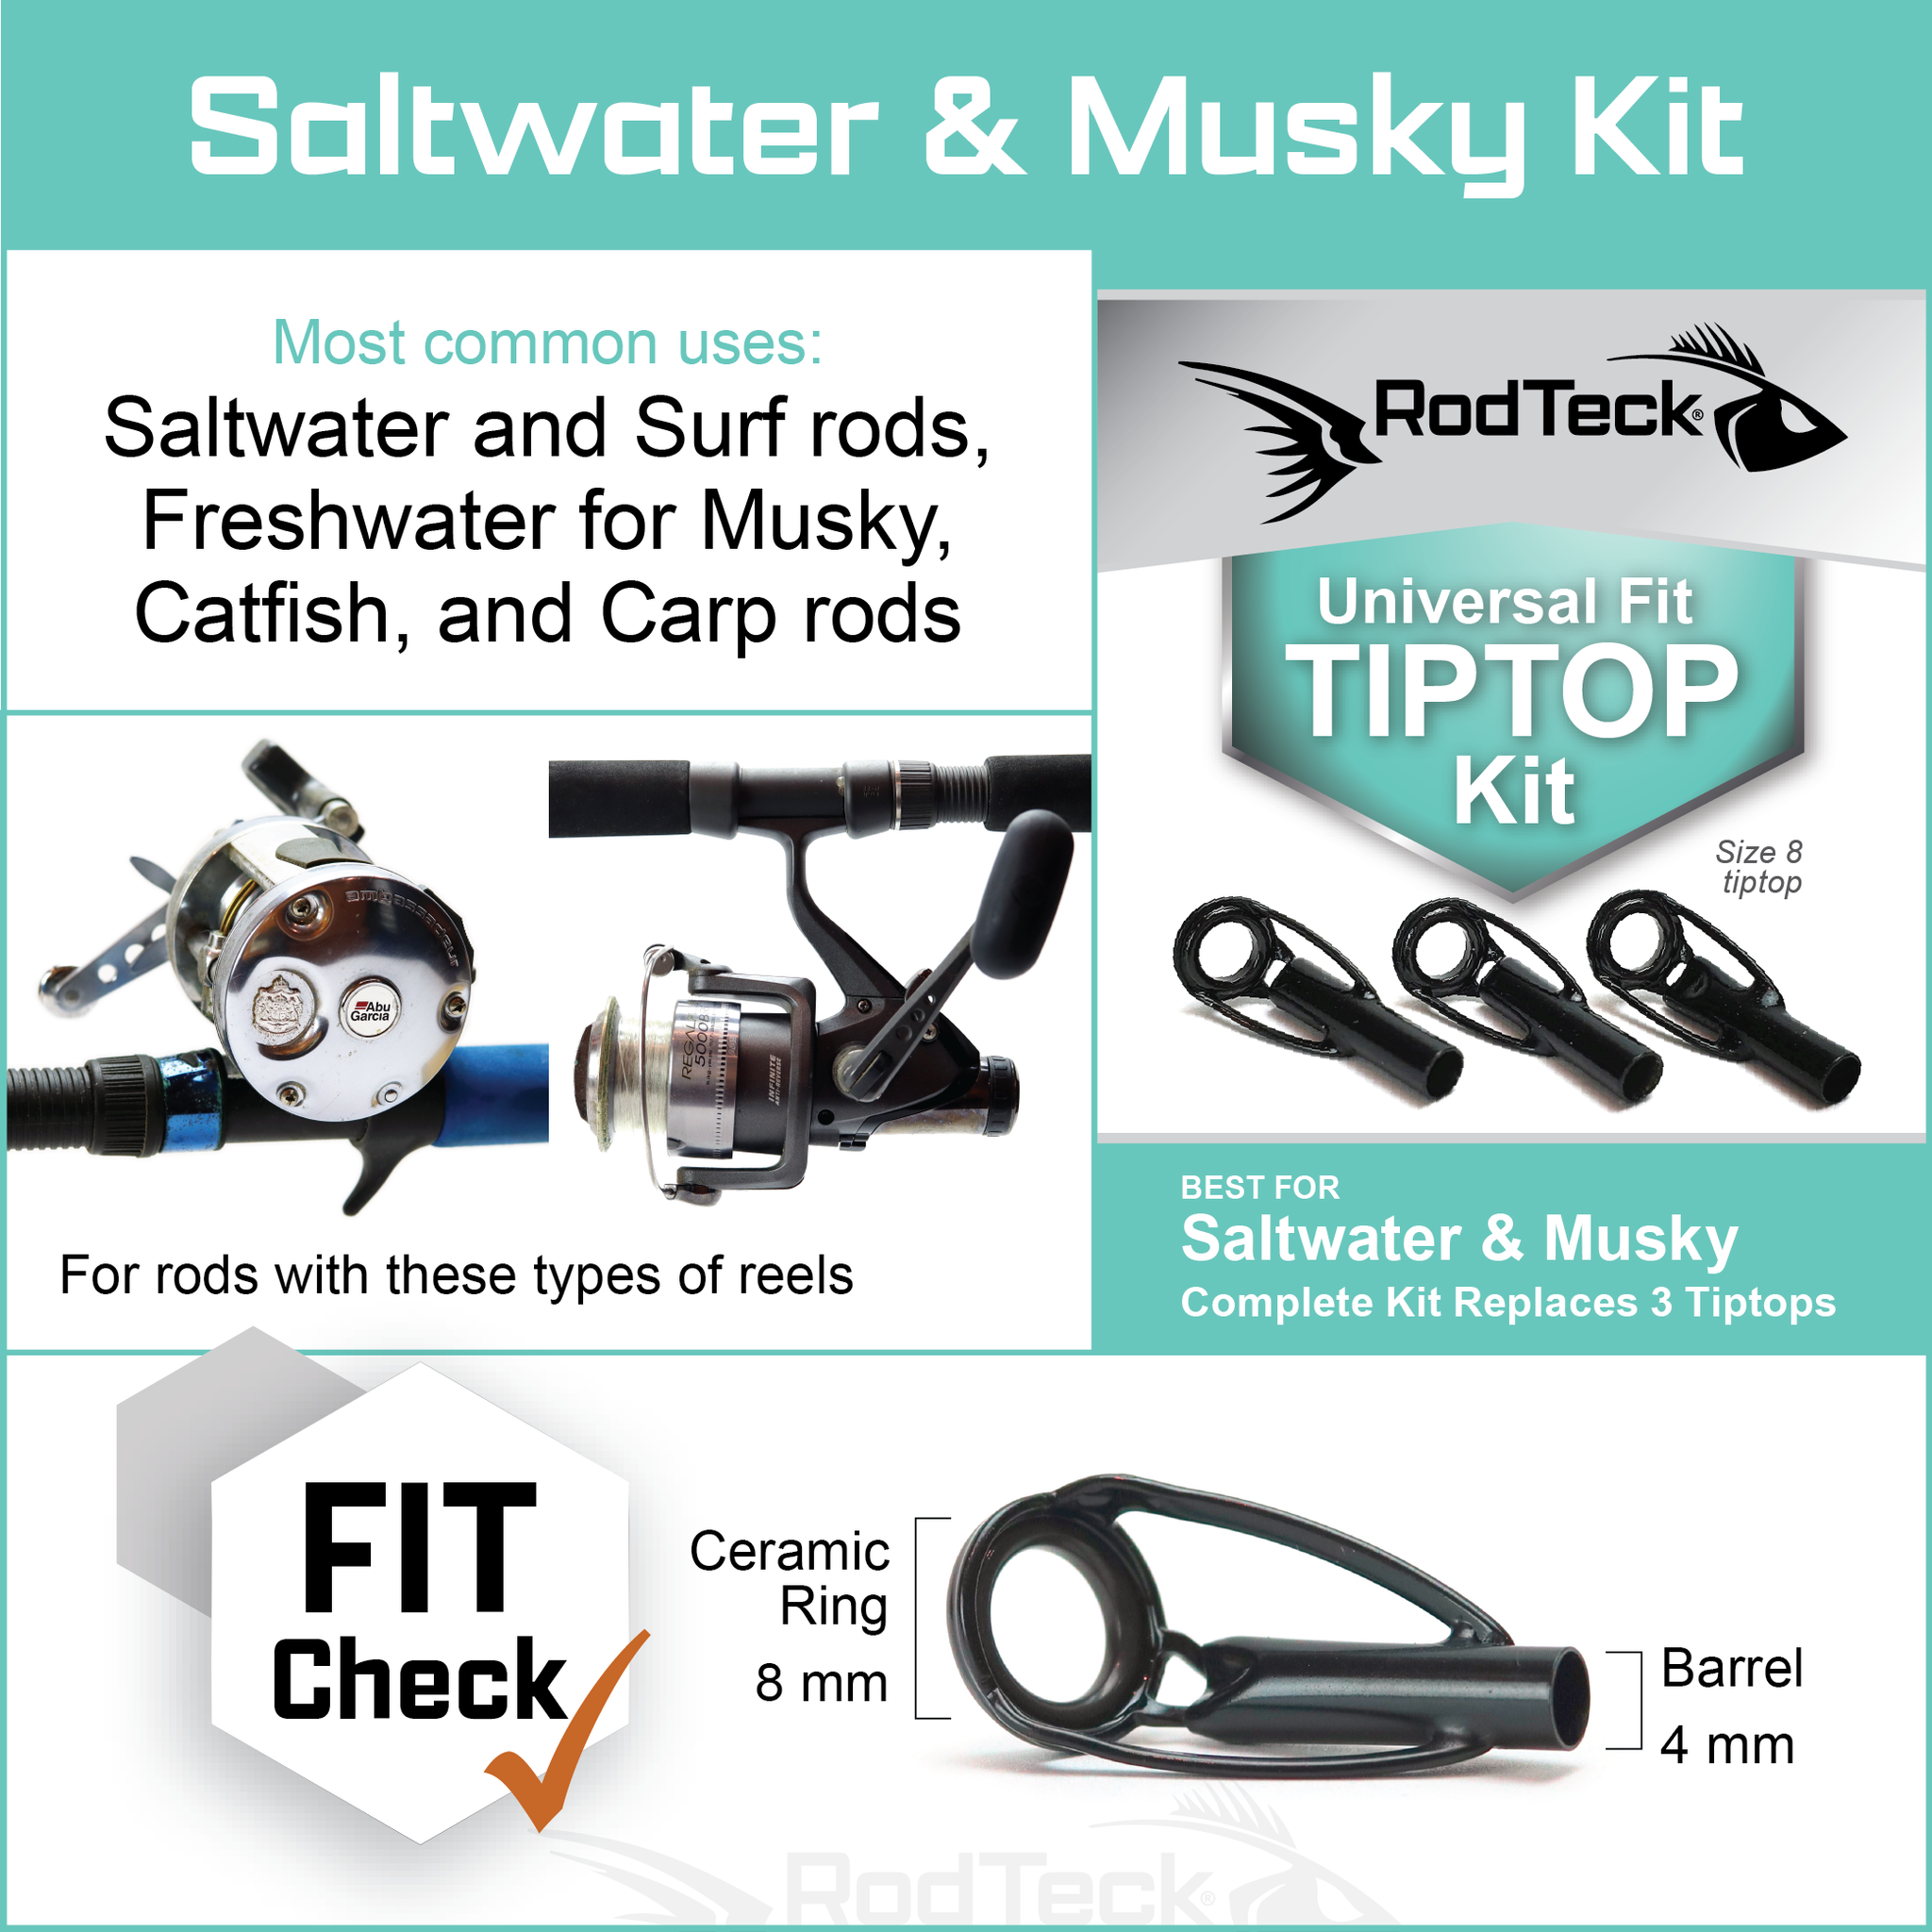 RodTeck Guide Repair Kit | Complete Fishing Rod Repair Kit